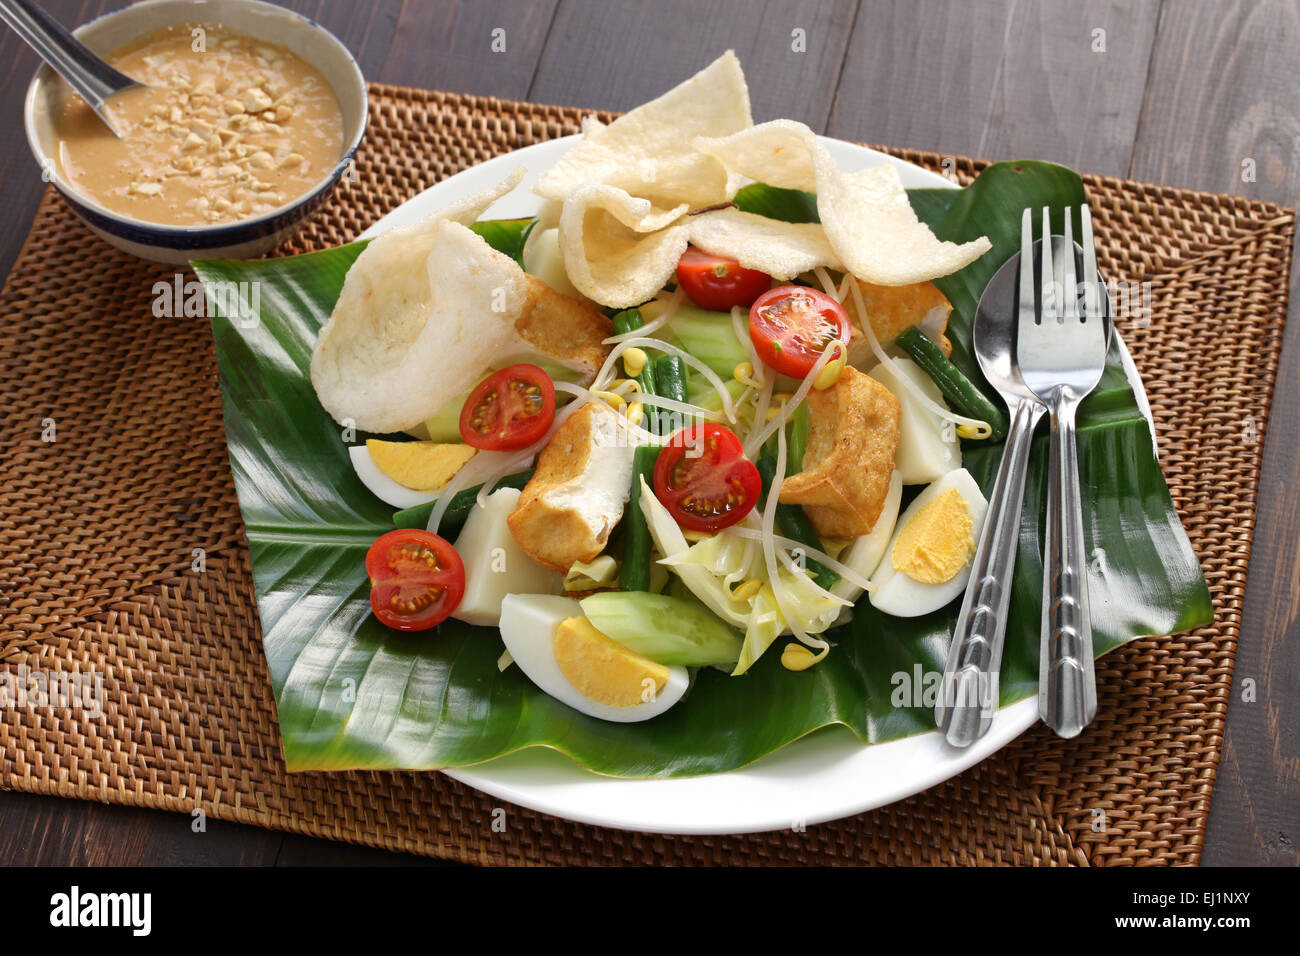 Gado gado, salade indonésienne, sauce aux arachides et krupuk Banque D'Images